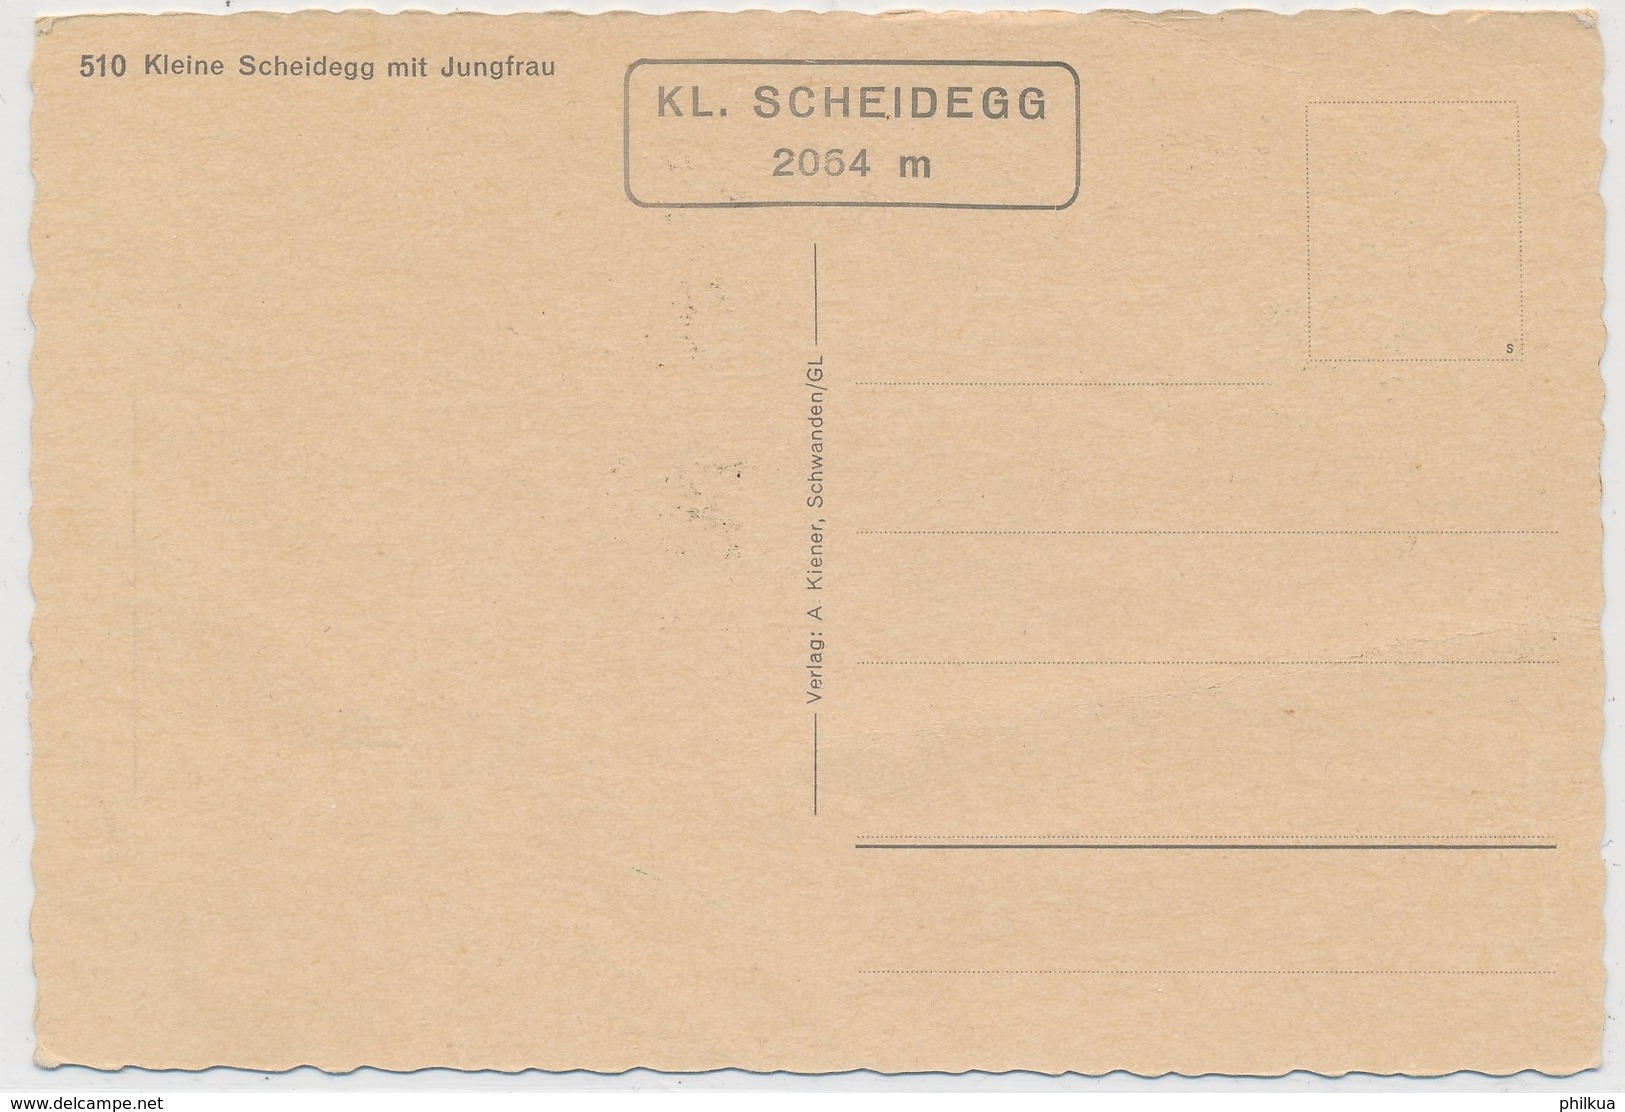 510 Verlag A. Kiener, Schwanden GL - Kleine Scheidegg Mit Jungfrau - Stempel: KL. SCHEIDEGG 2054 M - Schwanden Bei Brienz